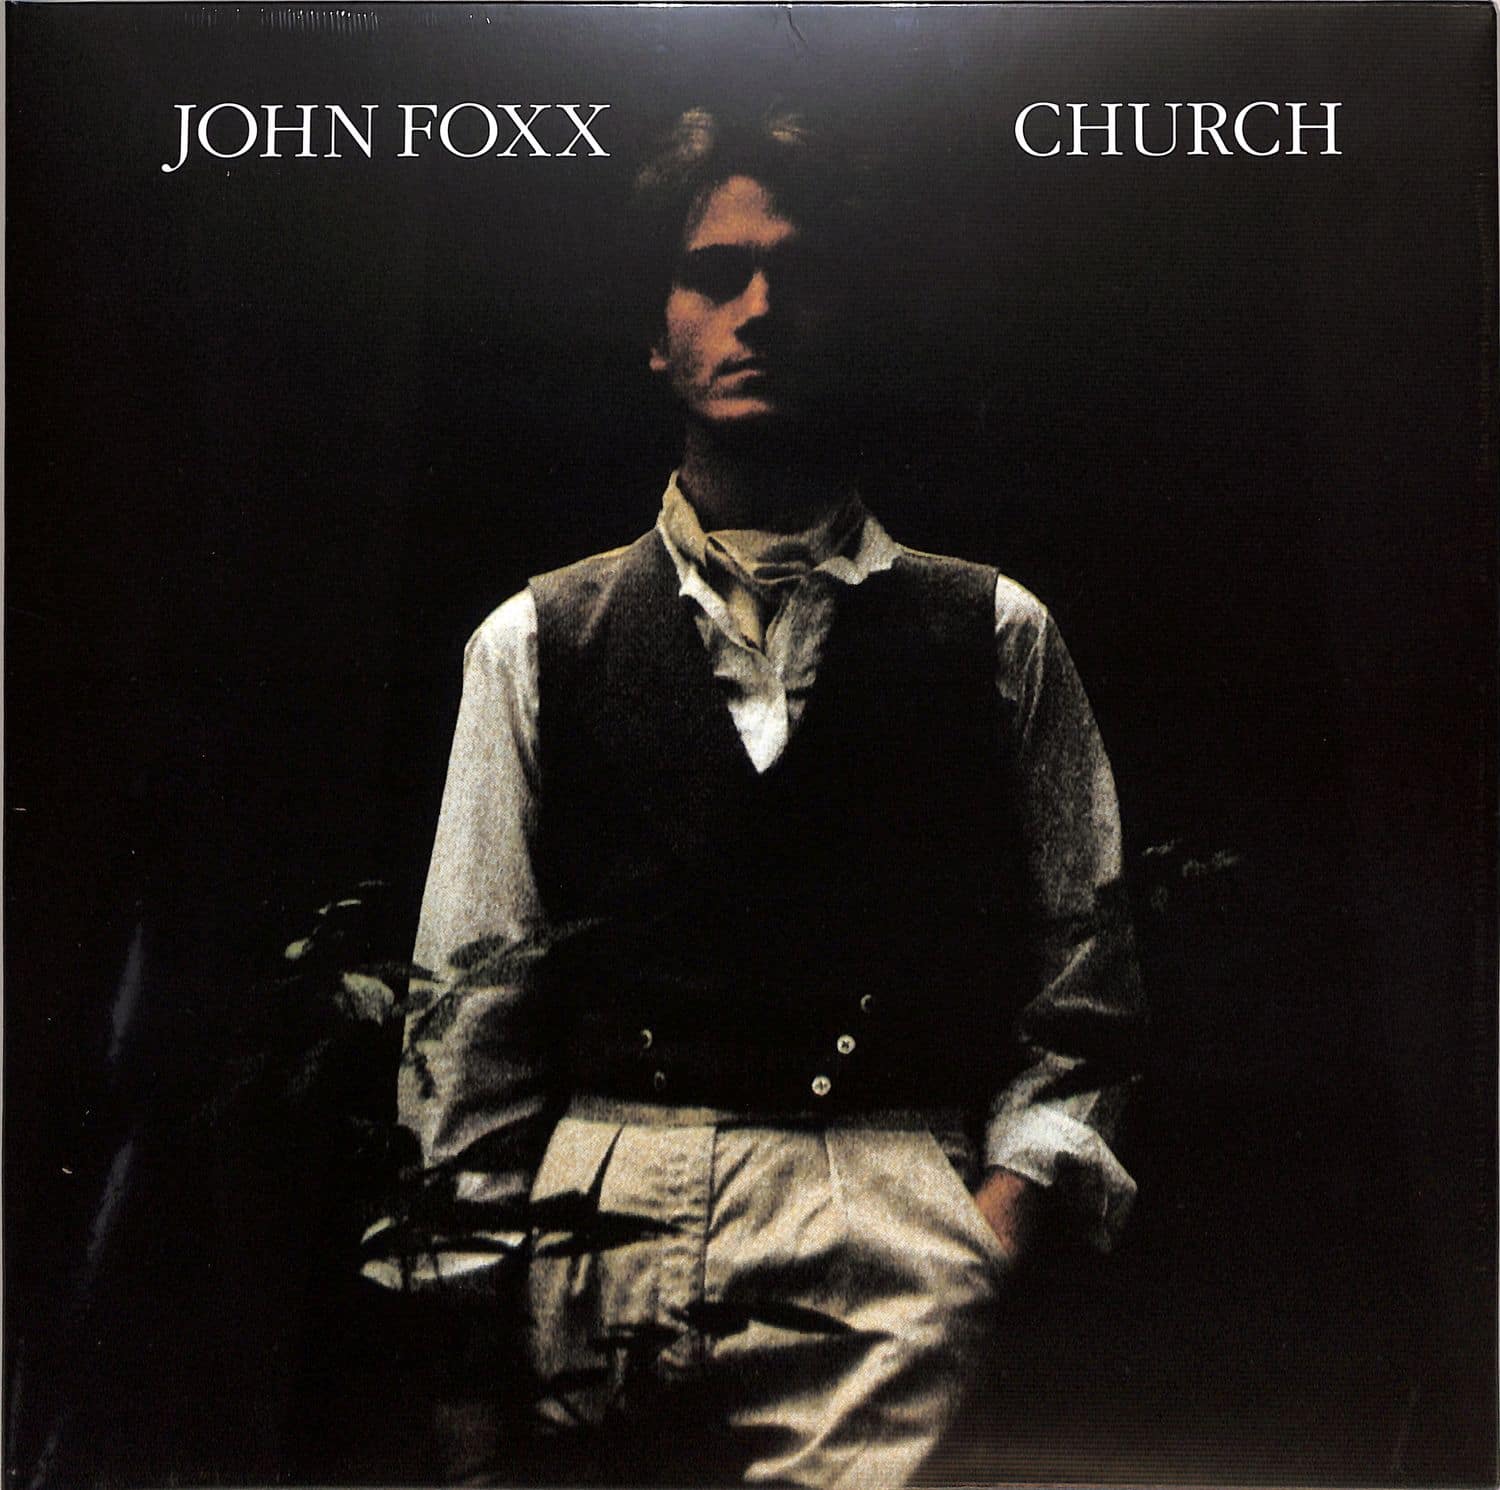 John Foxx - CHURCH 